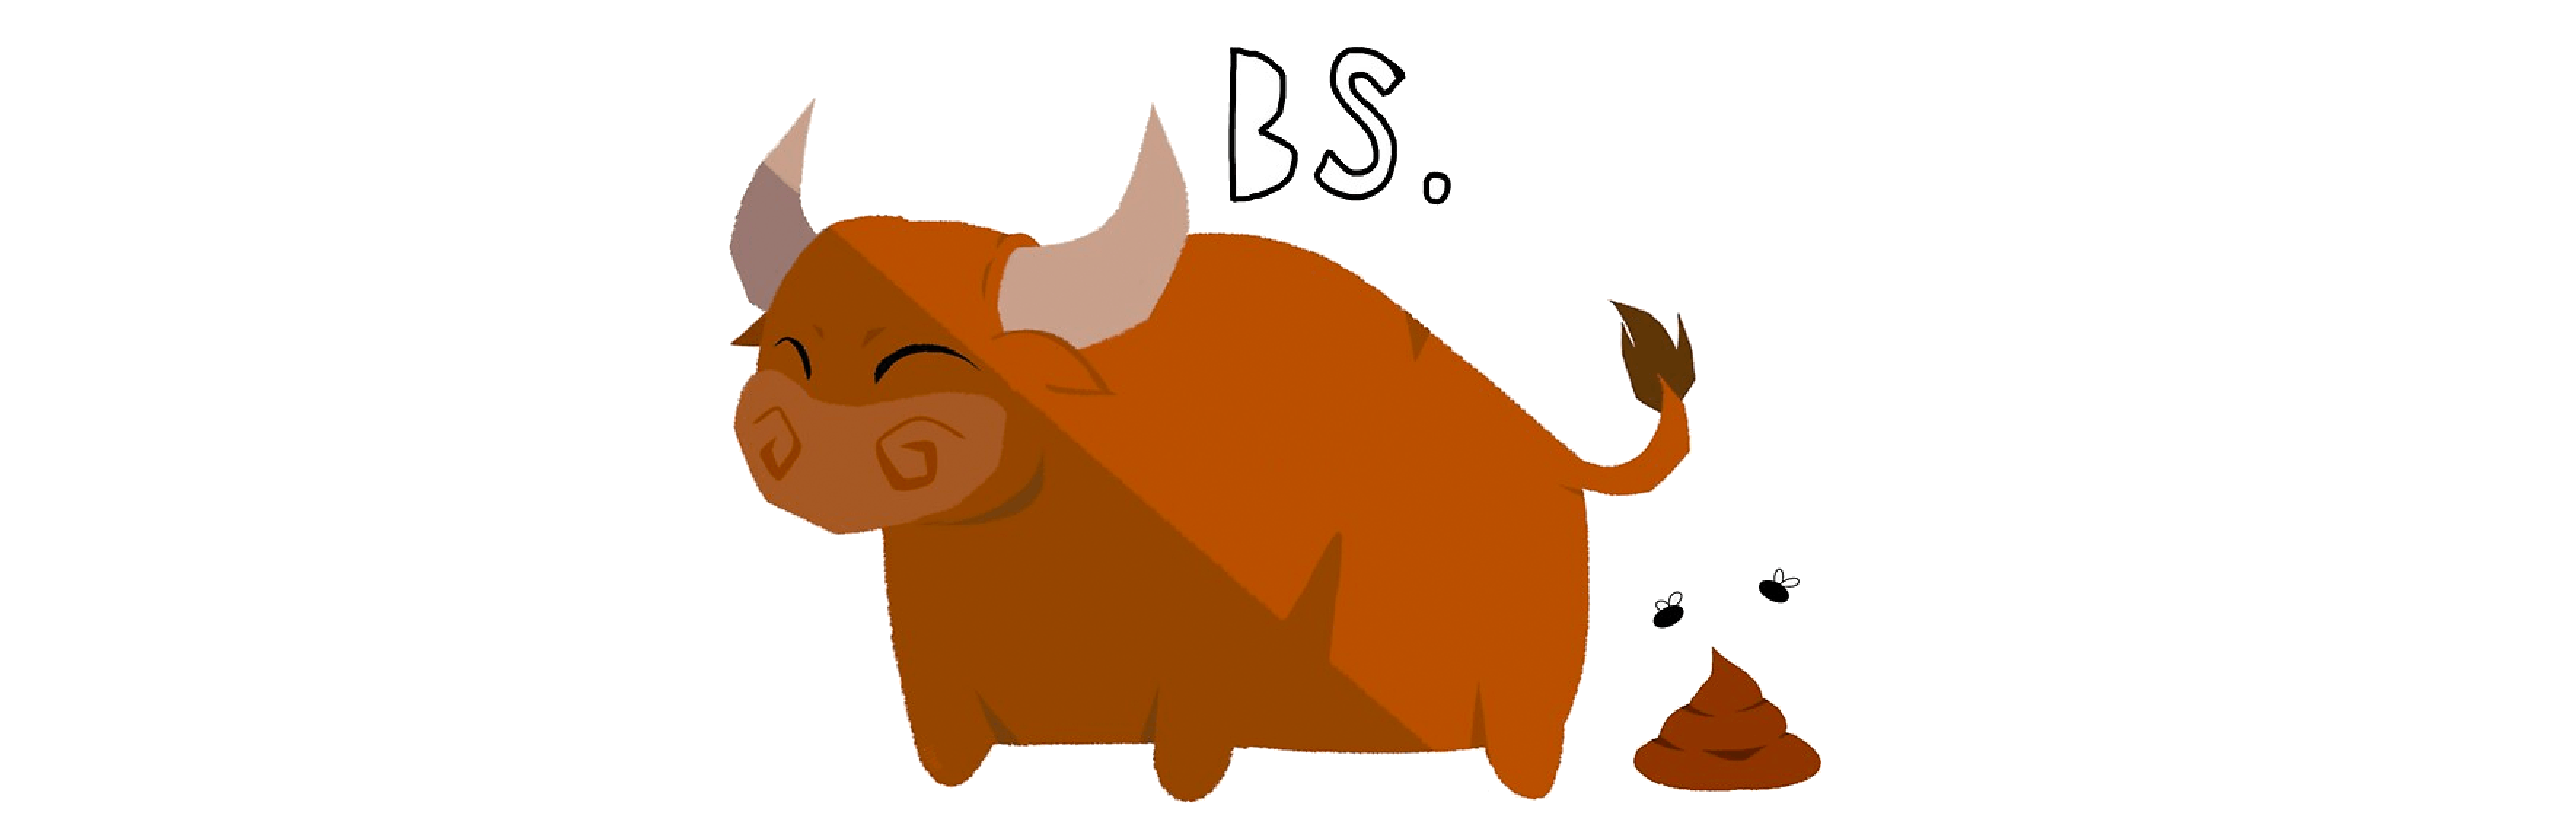 A cute cartoon brown bull, pooping